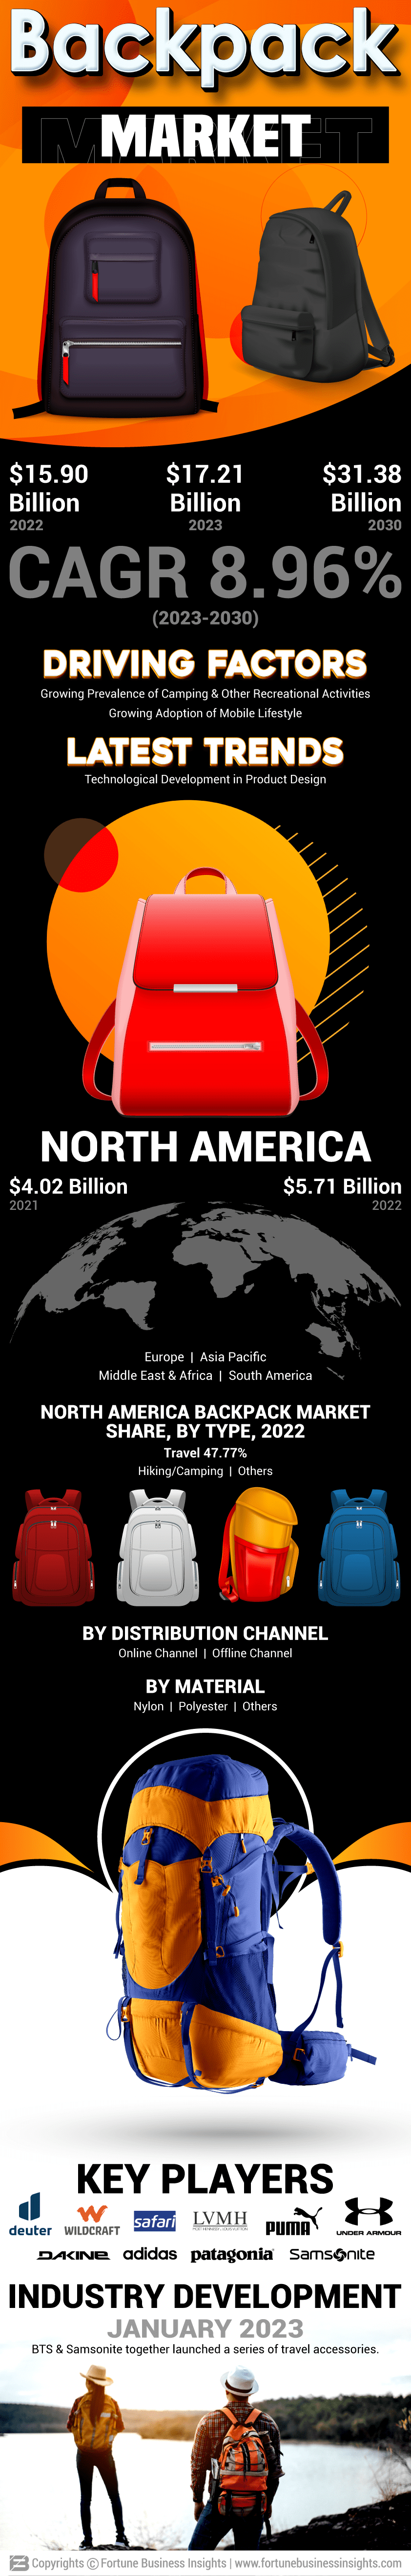 Backpack market